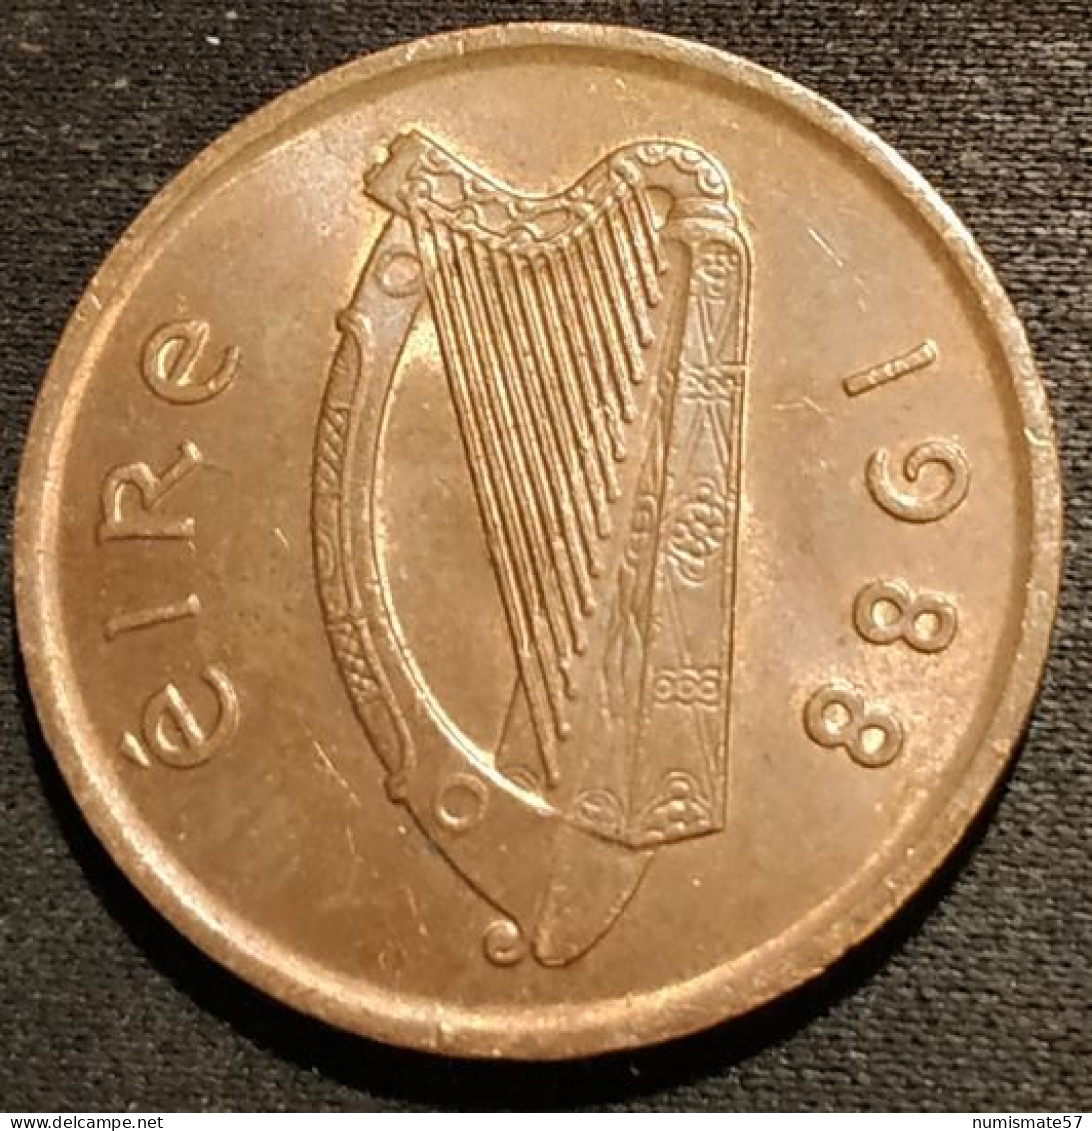 IRLANDE - EIRE - 2 PENCE 1988 - KM 21 - IRELAND - Irland